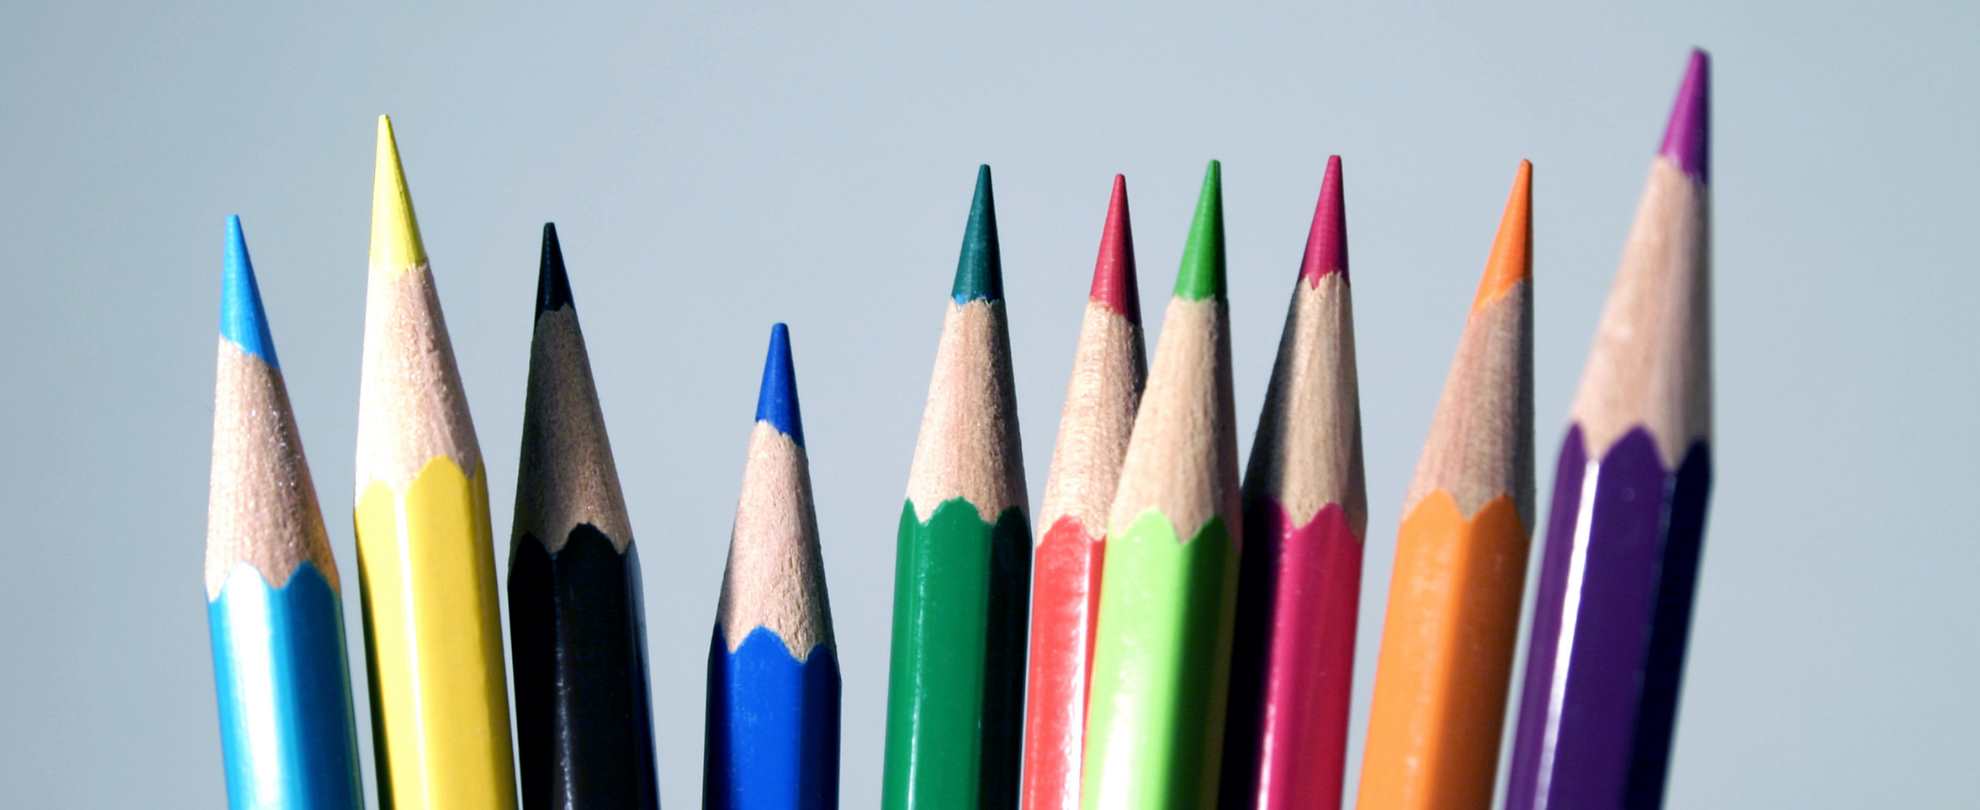 مداد رنگی چگونه ساخته میشود